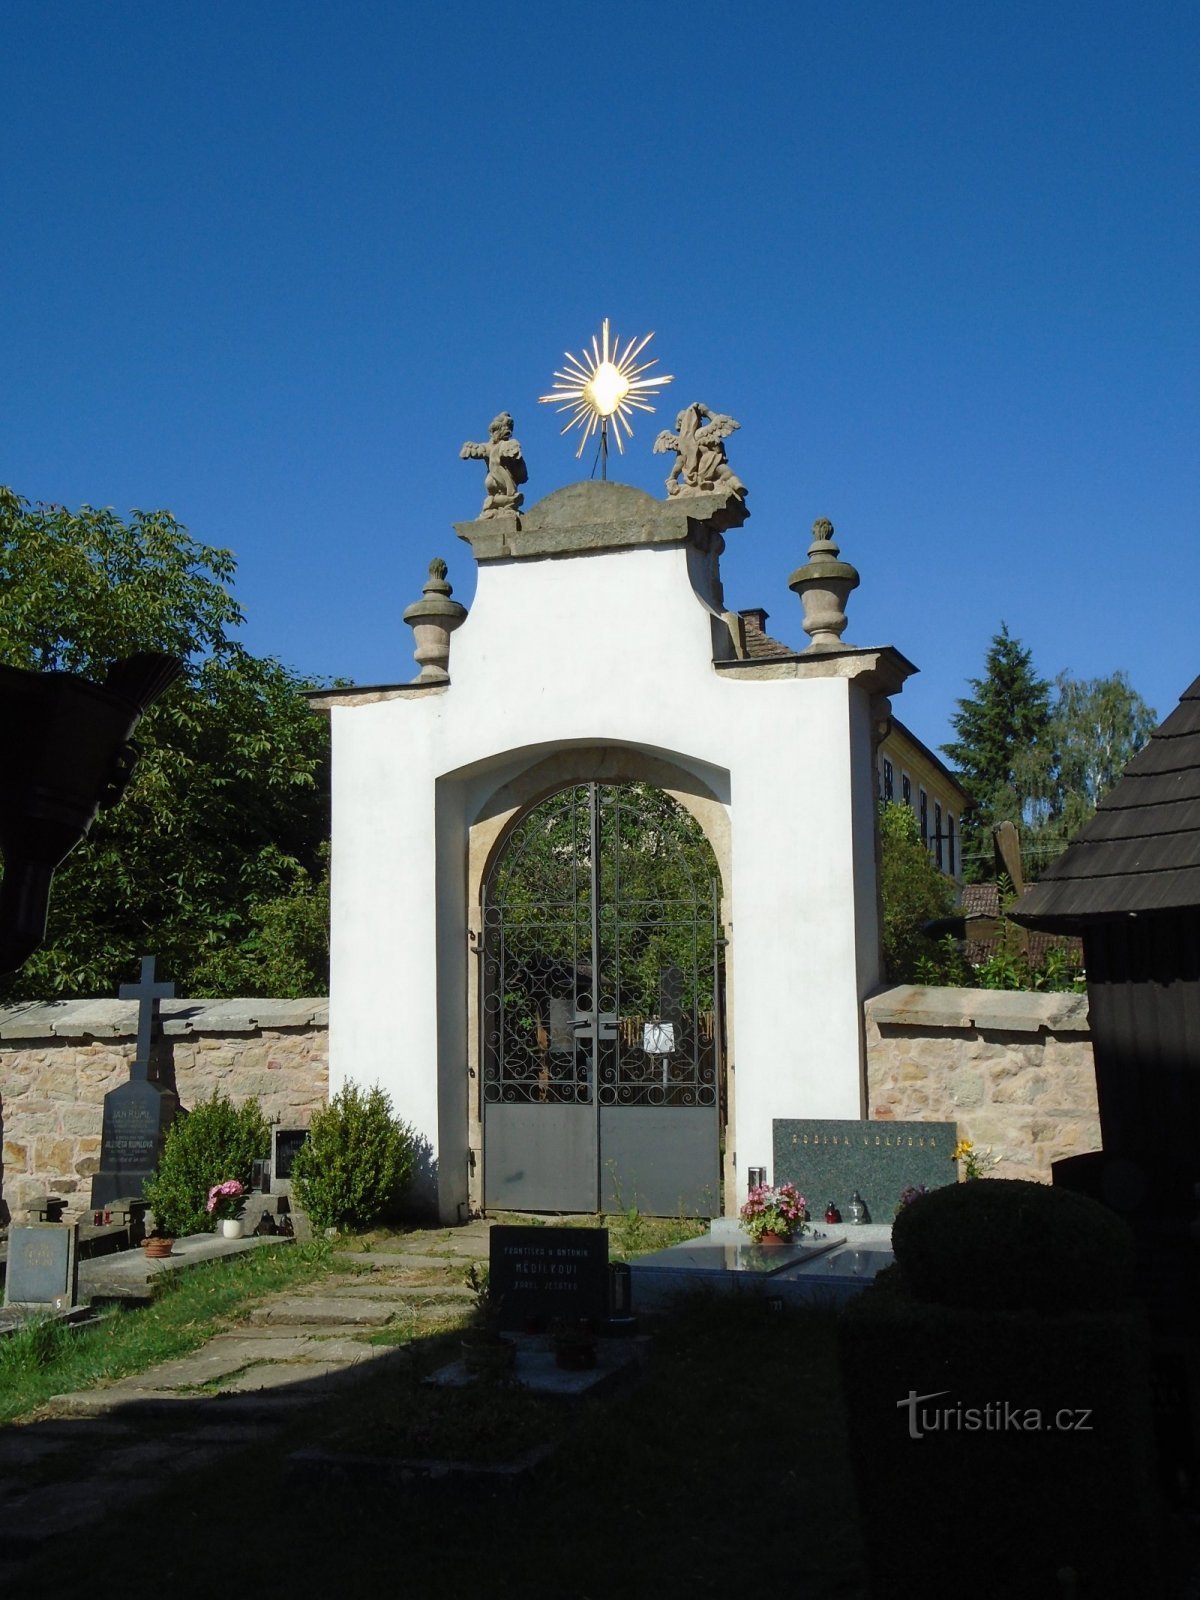 Cemetery gate (Chotěborky, 3.7.2018 July XNUMX)